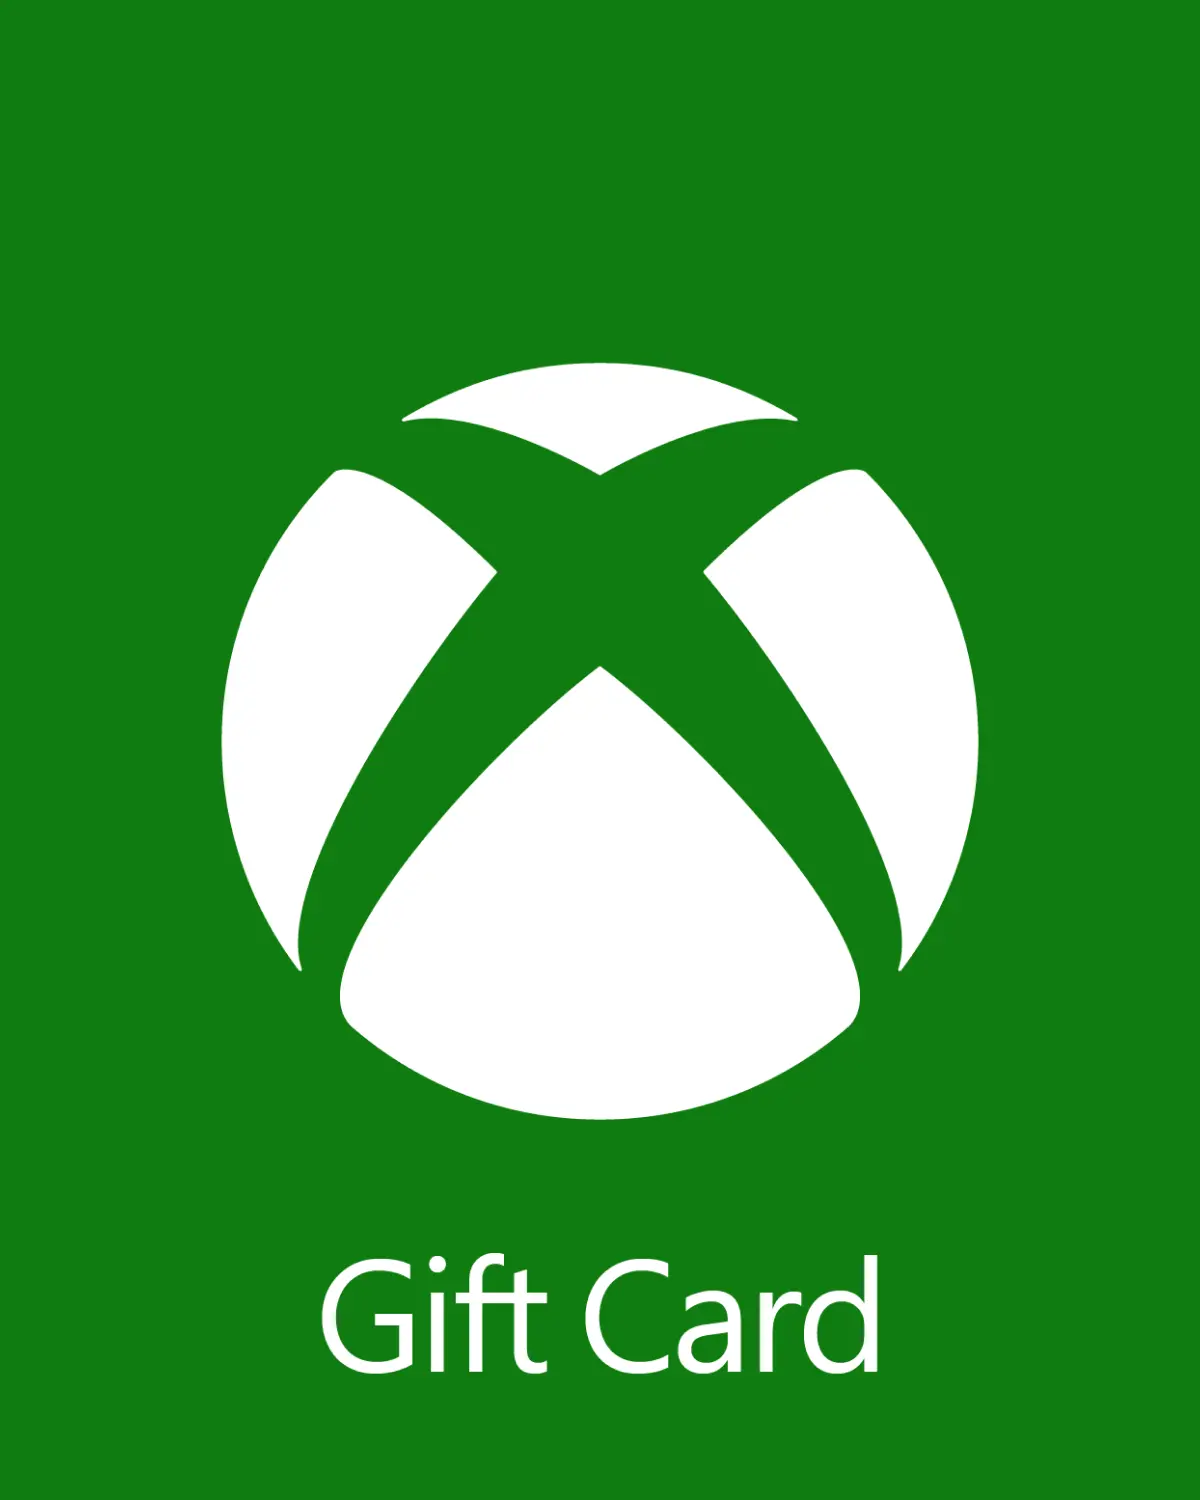 Xbox £50 GBP Gift Card (UK) - Digital Code